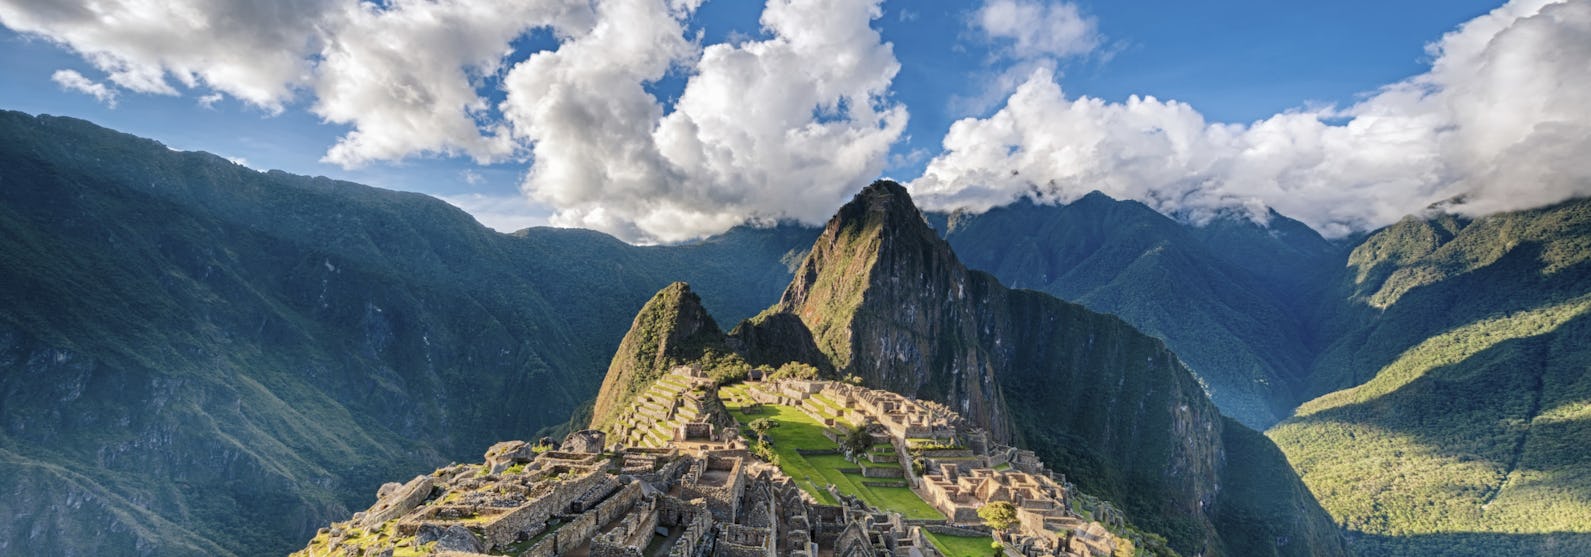 Peru-South-America